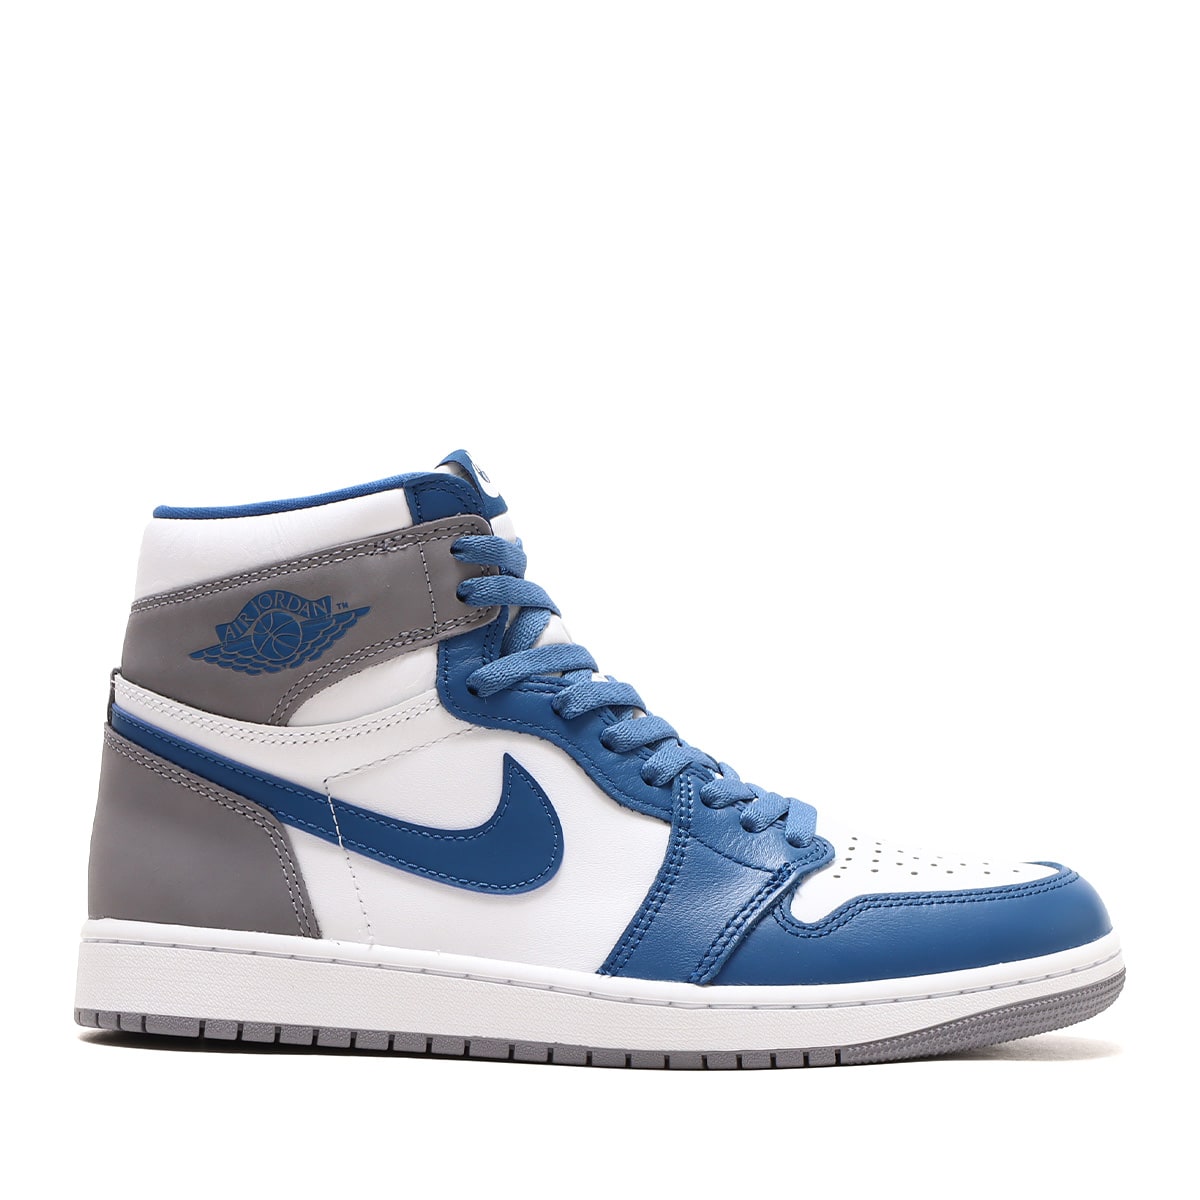 Nike Air Jordan 1 High OG True Blue28.5㎝